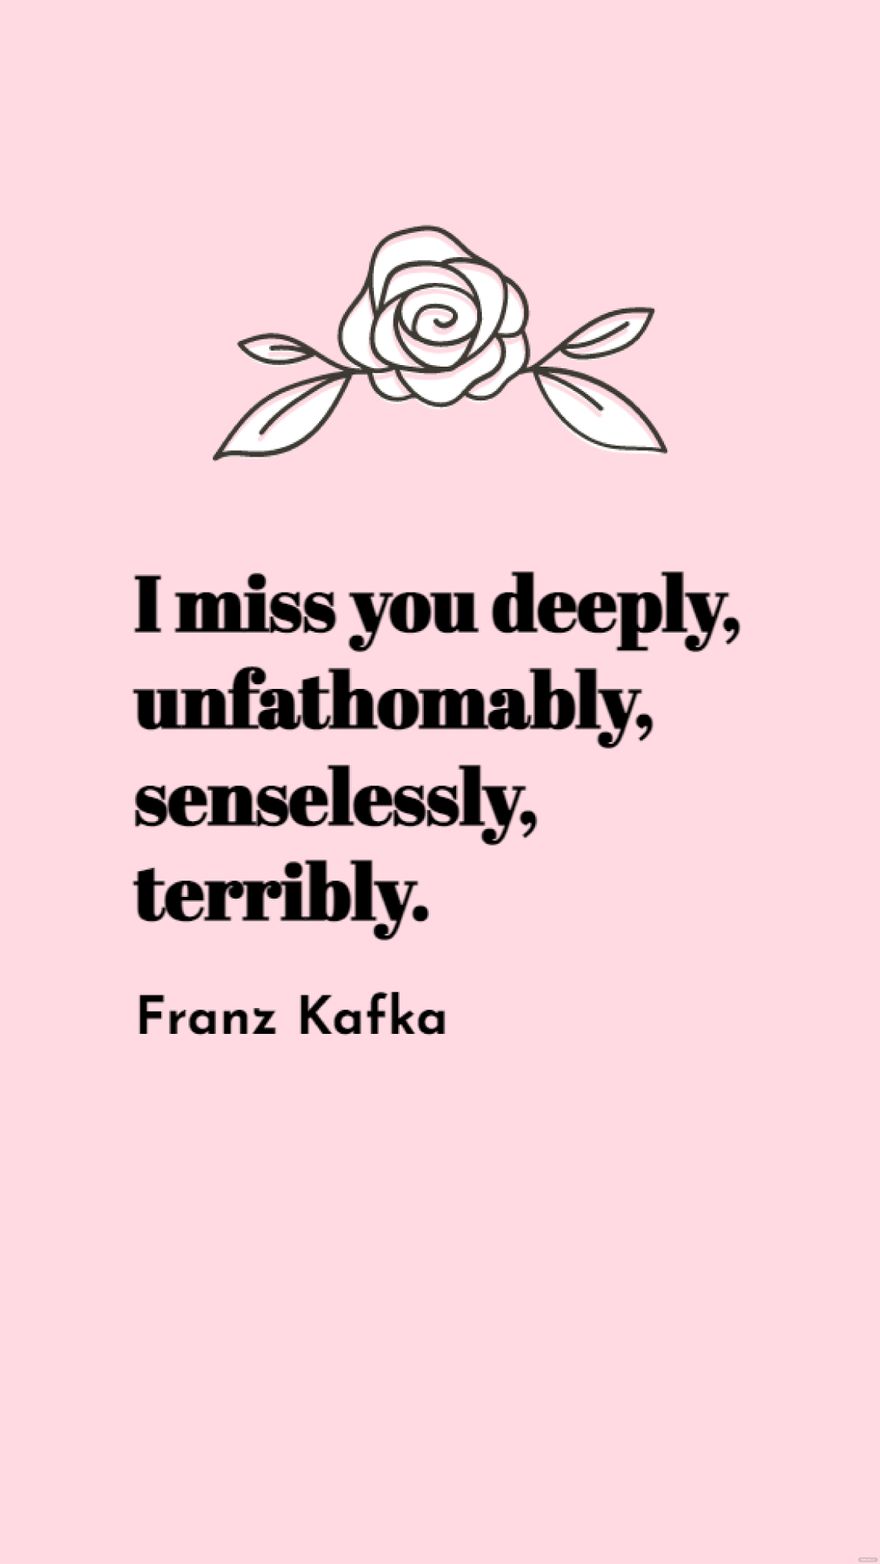 Franz Kafka - I miss you deeply, unfathomably, senselessly, terribly.